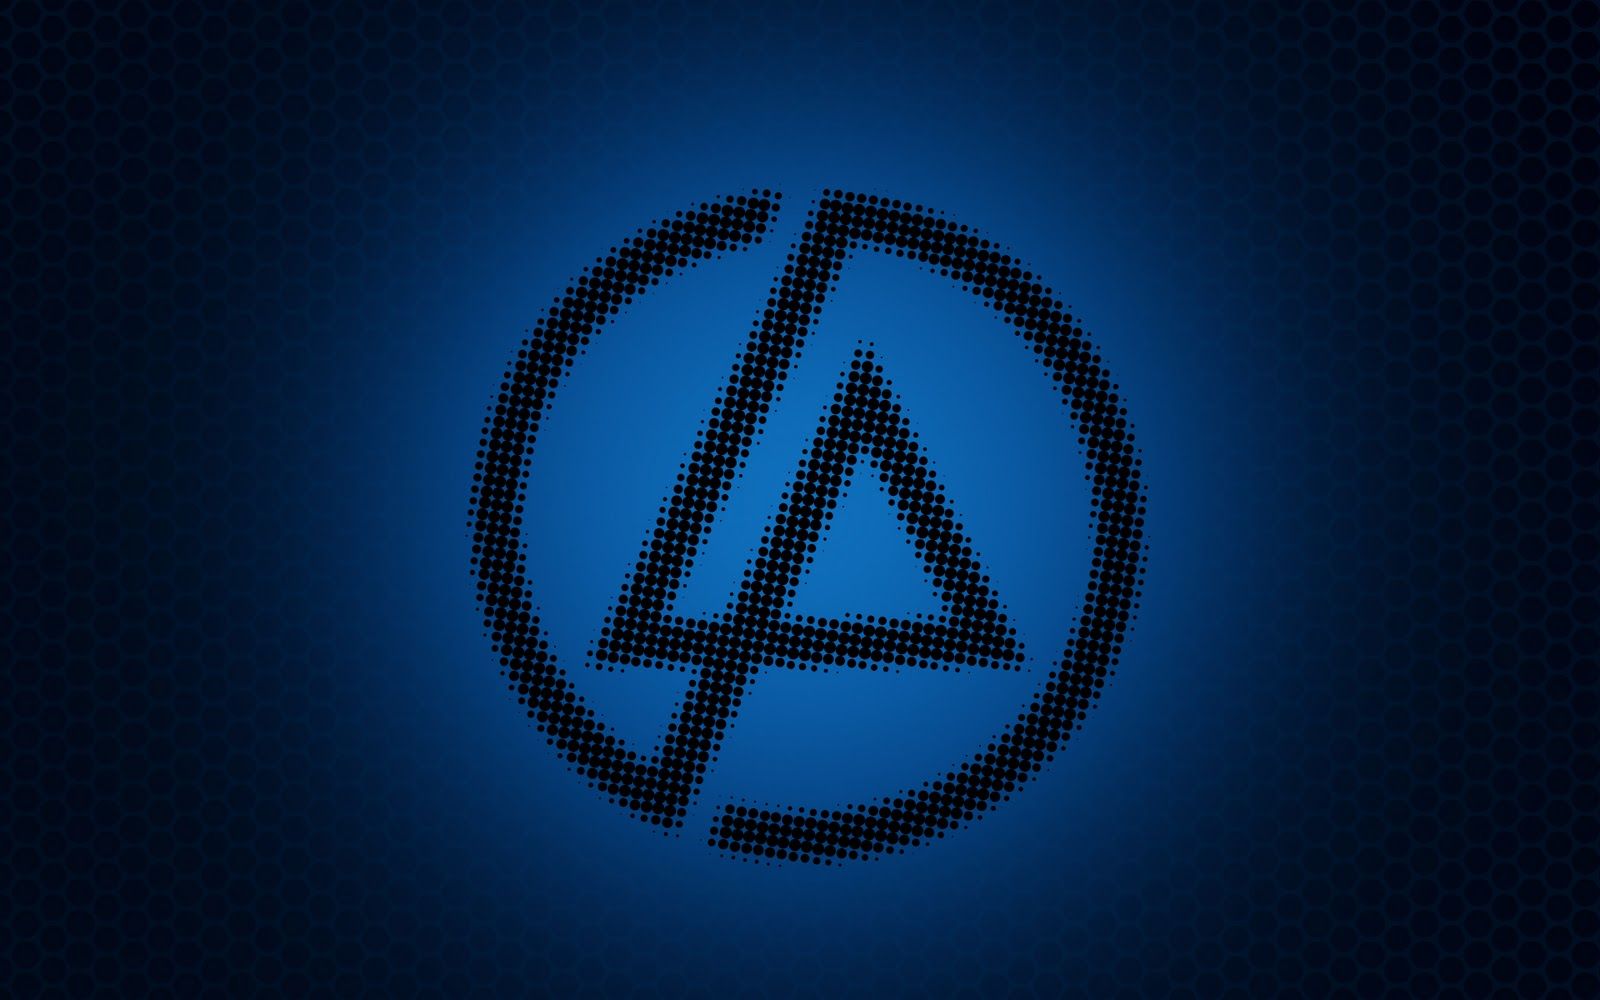 Linkin Park Logo Wallpaper